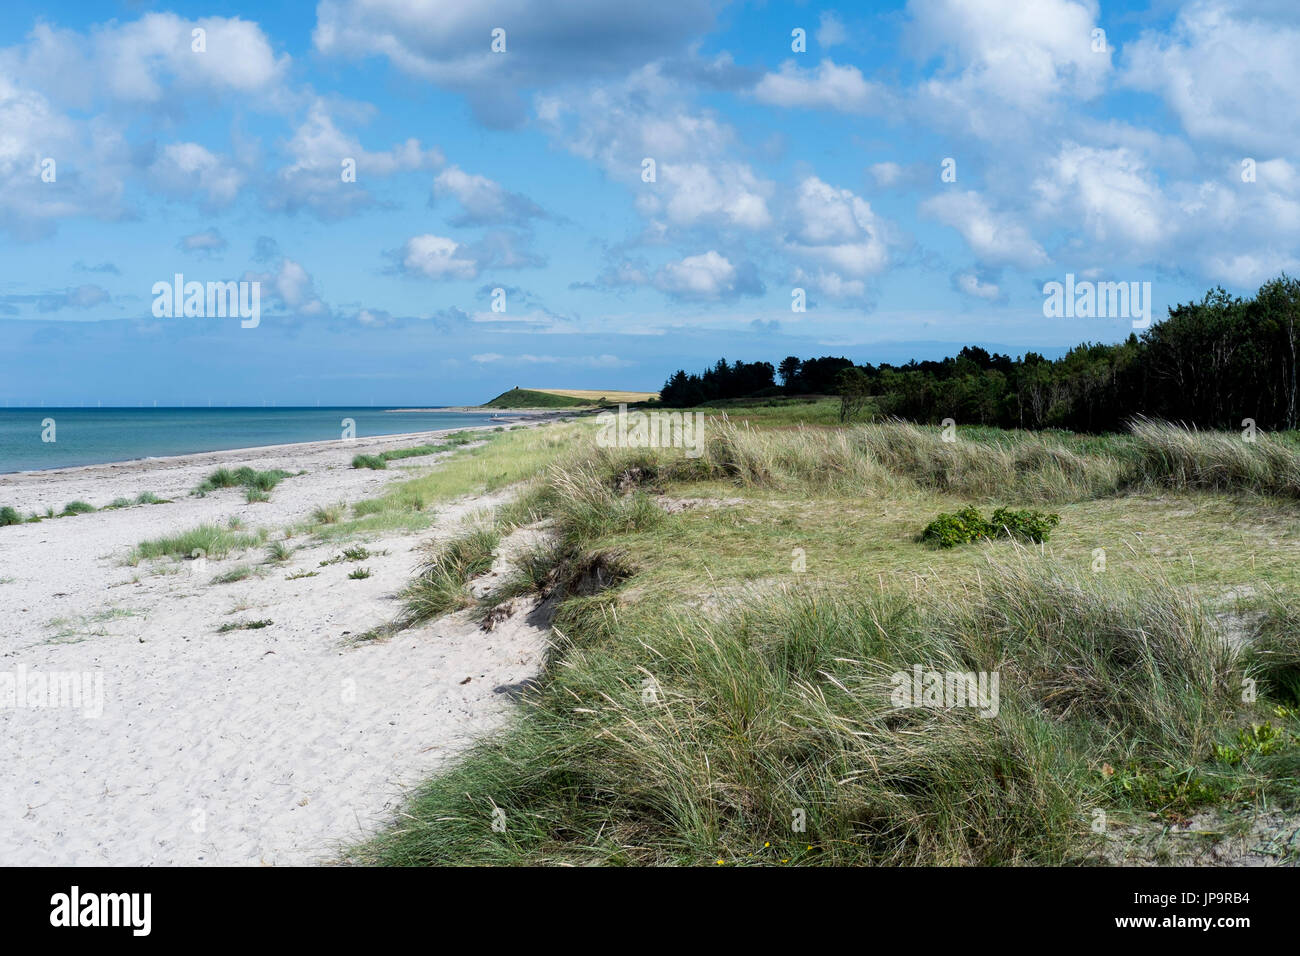 Nordstrand plage près de Grenade - Gjerrild - Jutland - Danemark - Djursland Banque D'Images